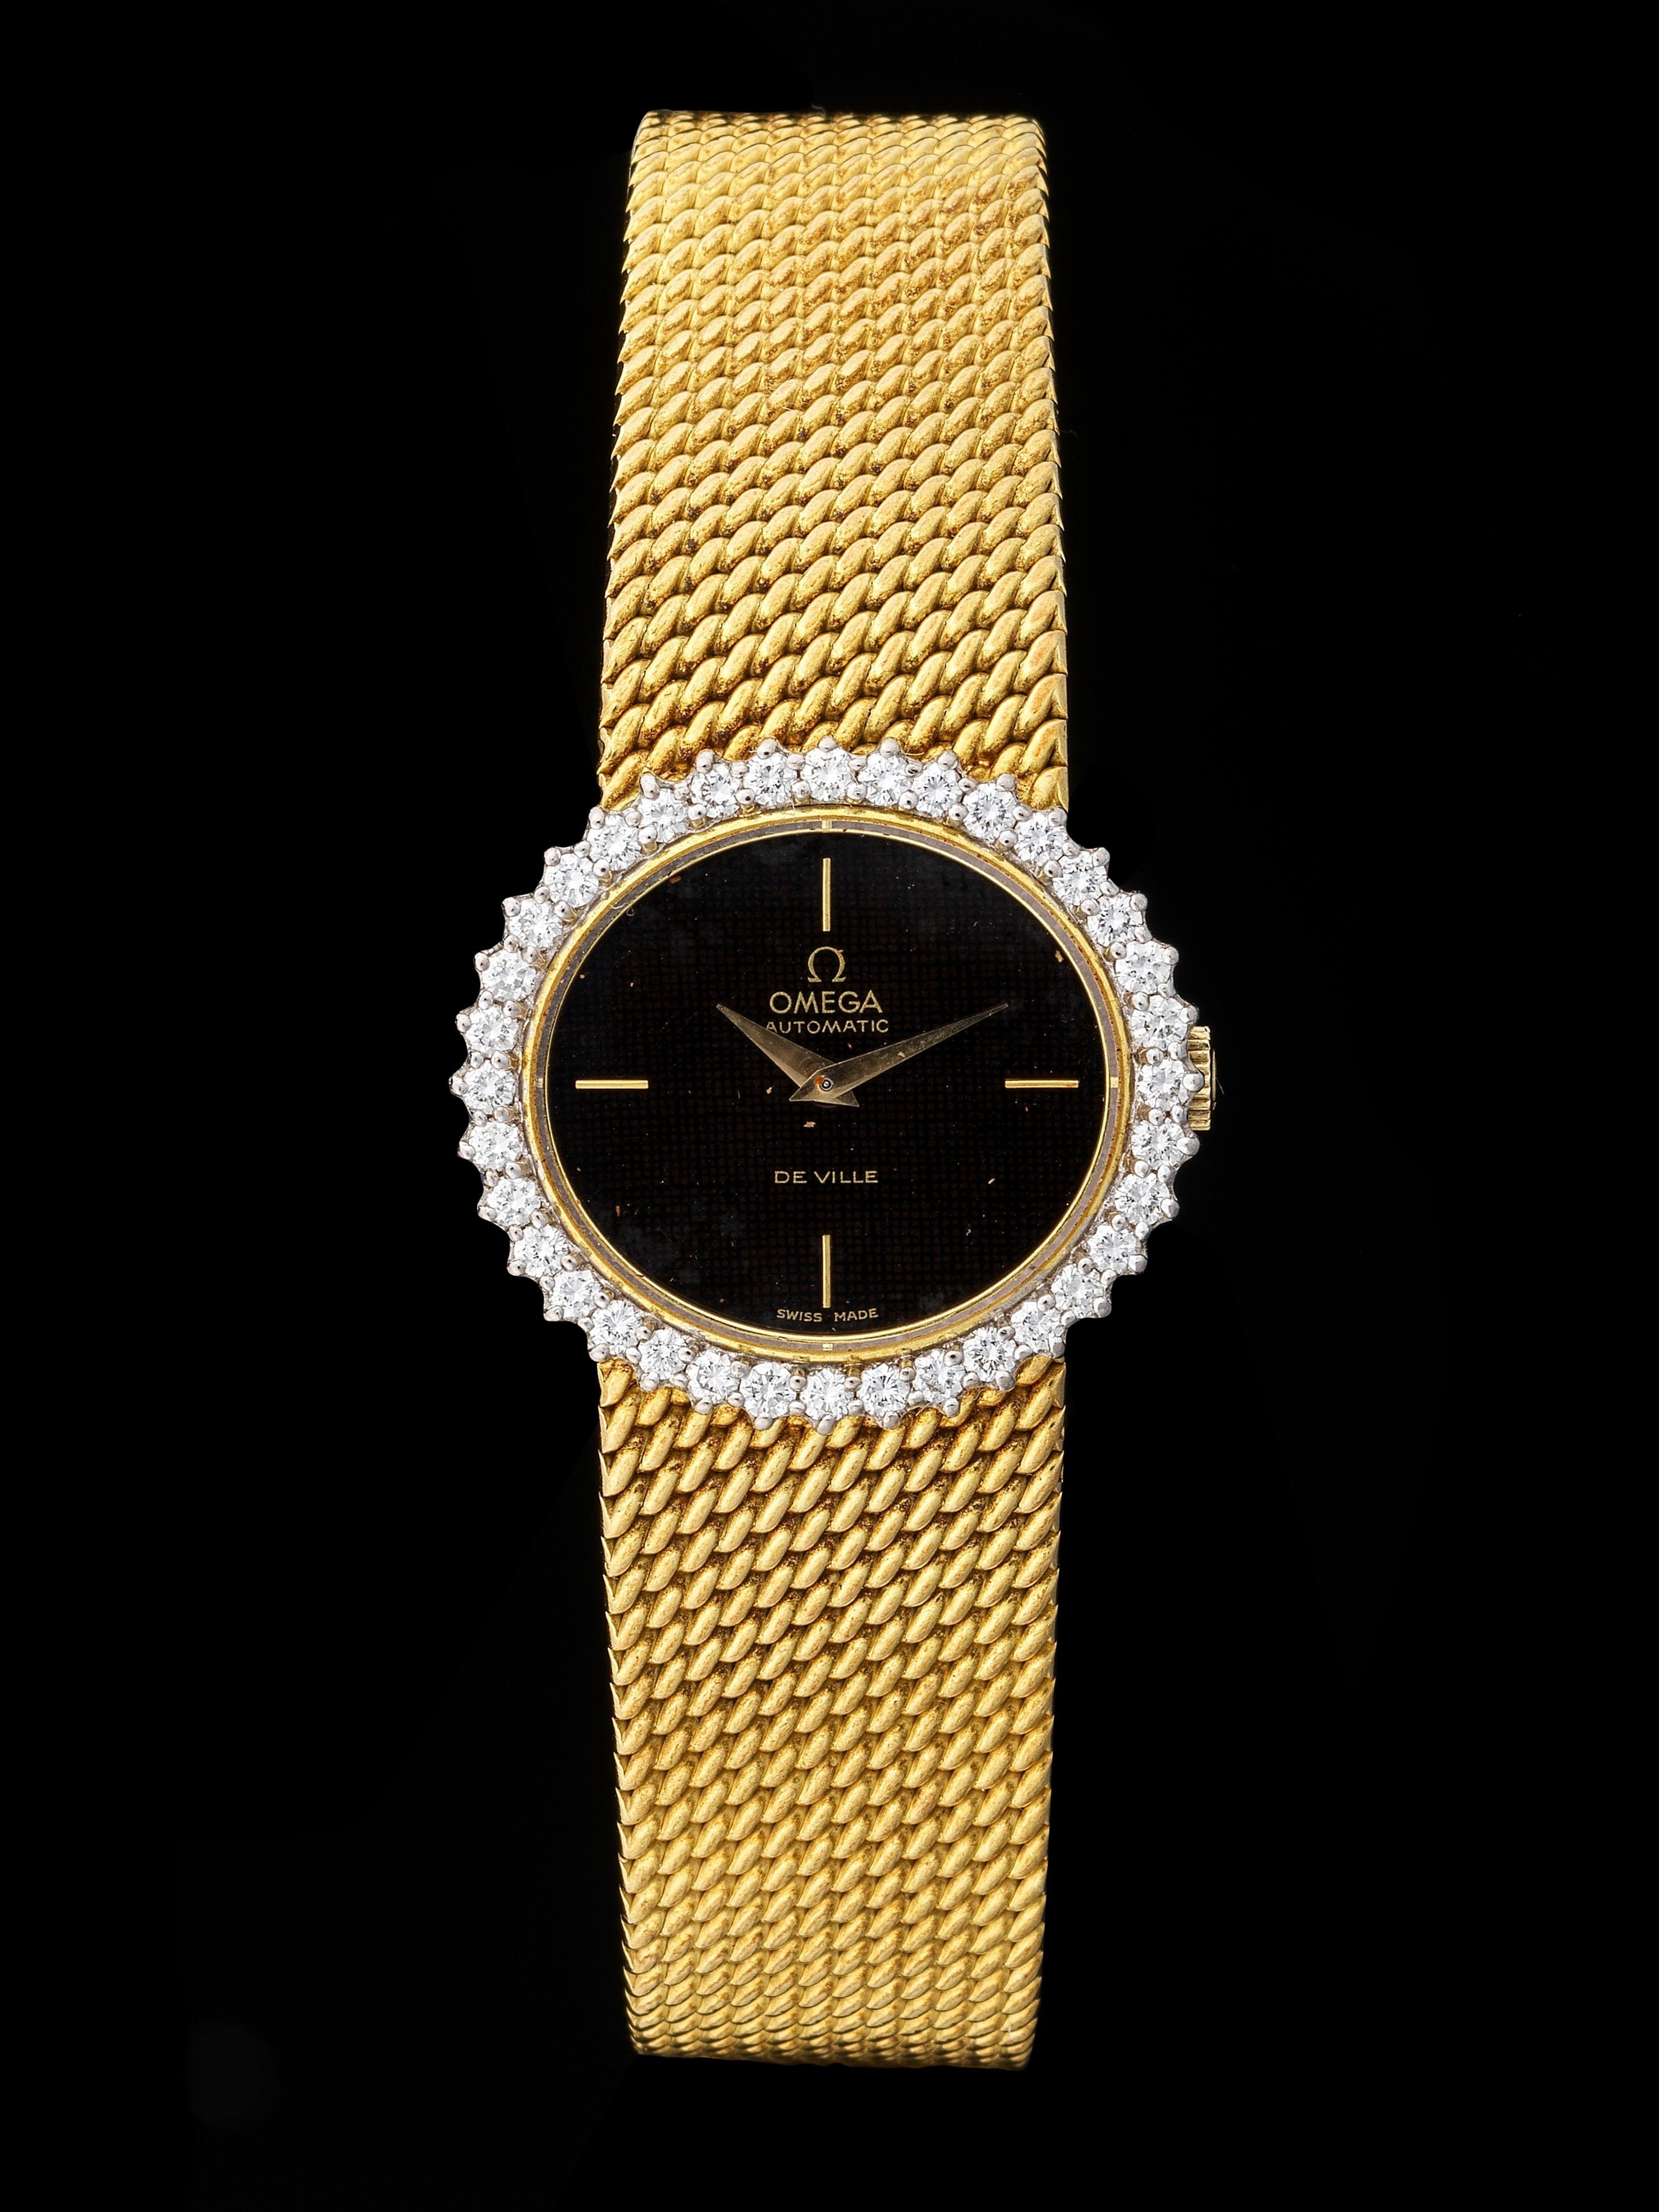 Omega, montre bracelet ovale automatique sertie de diamants (total env. 0,5 ct)